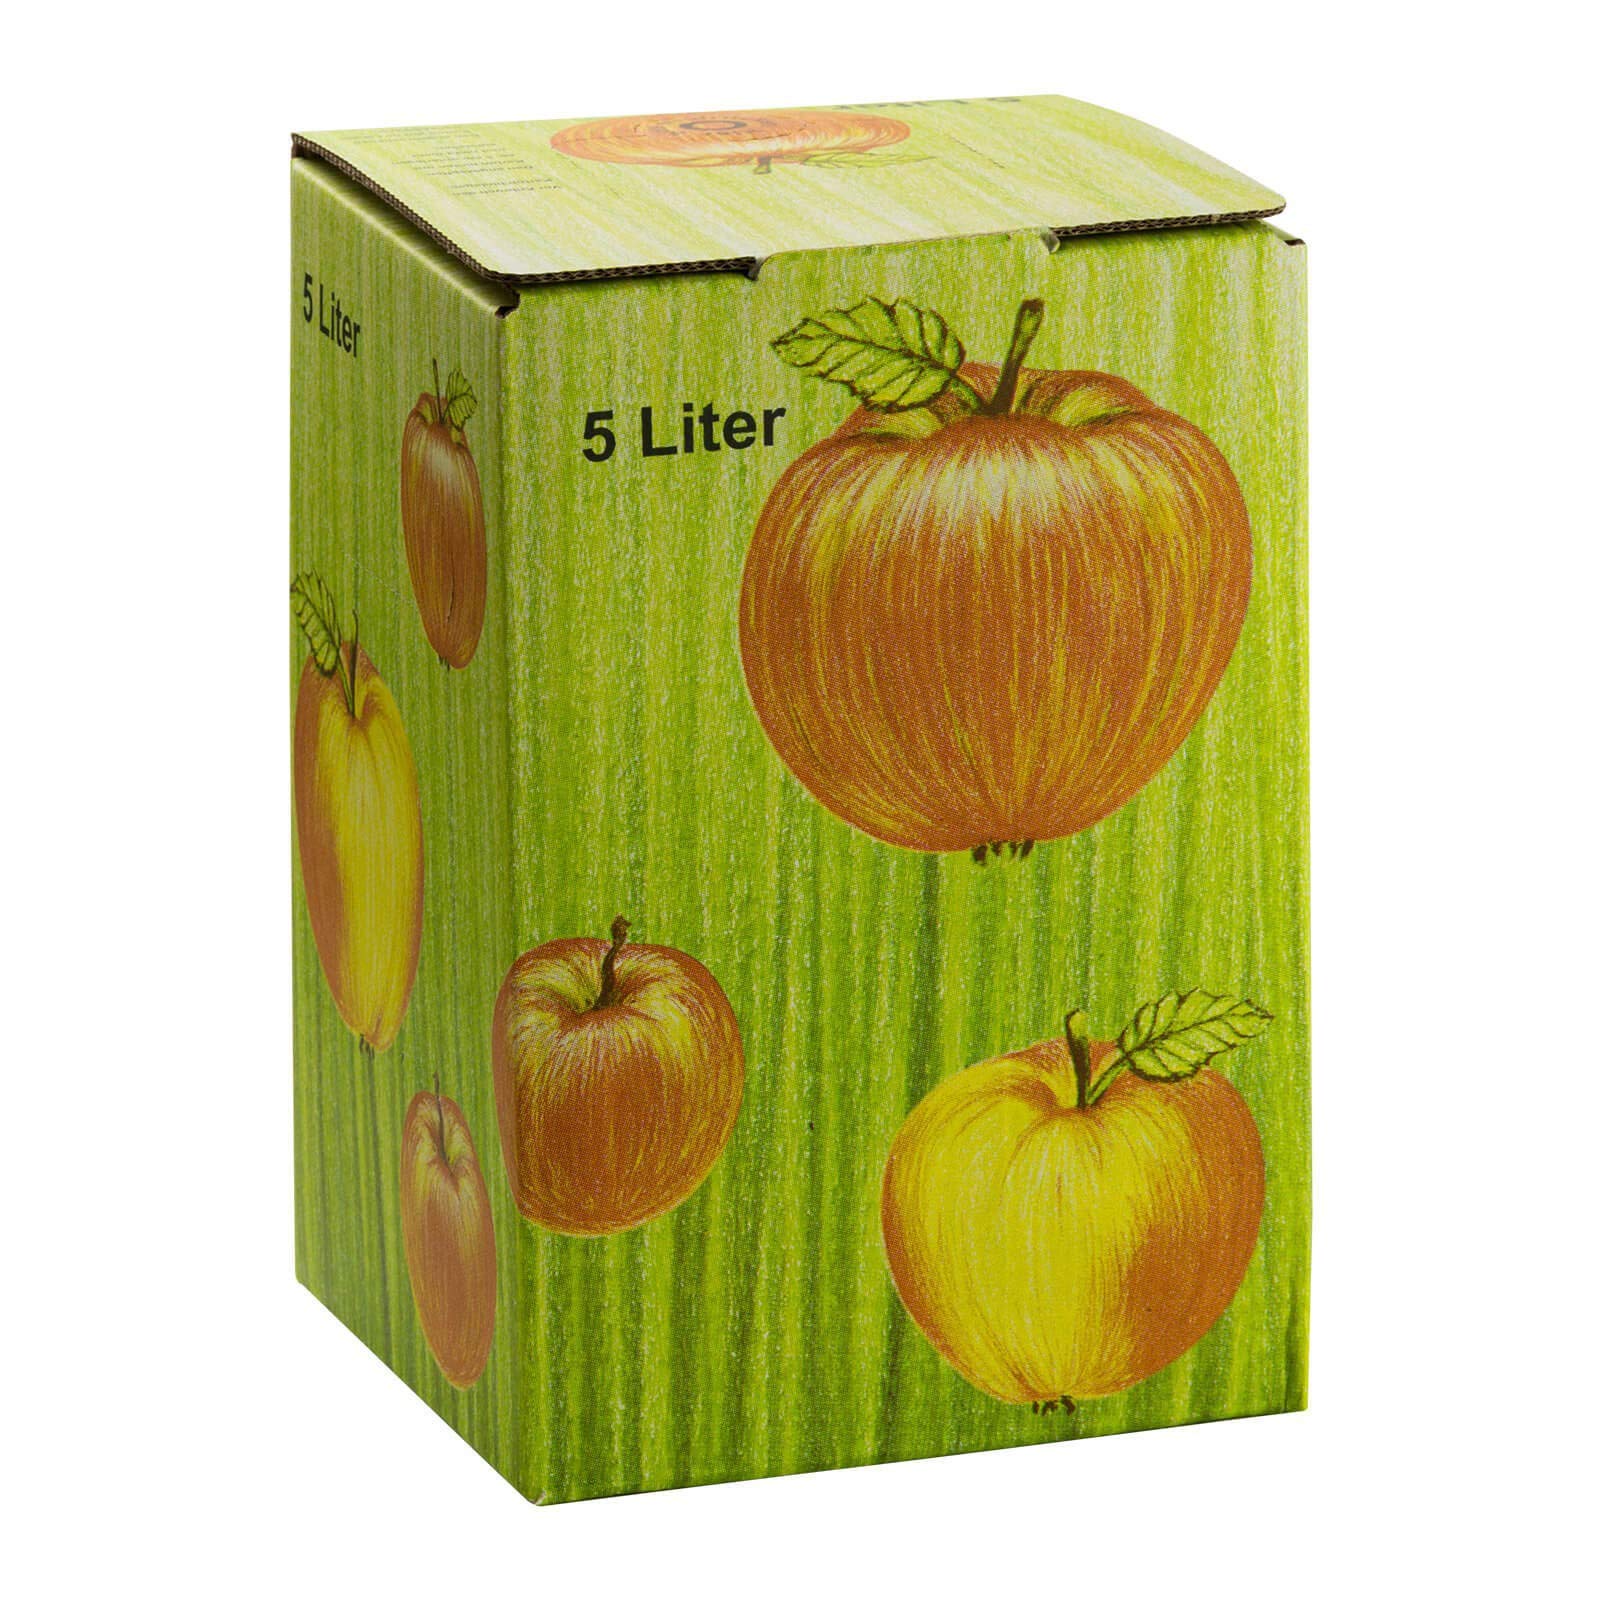 DeTec Bag in Box Karton Apfeldekor Apfelsaft Faltkarton Schachtel Most Saftkarton für Saftlagerung 3-5 - 10 Liter Füllmenge (20 STK, 5 Liter)